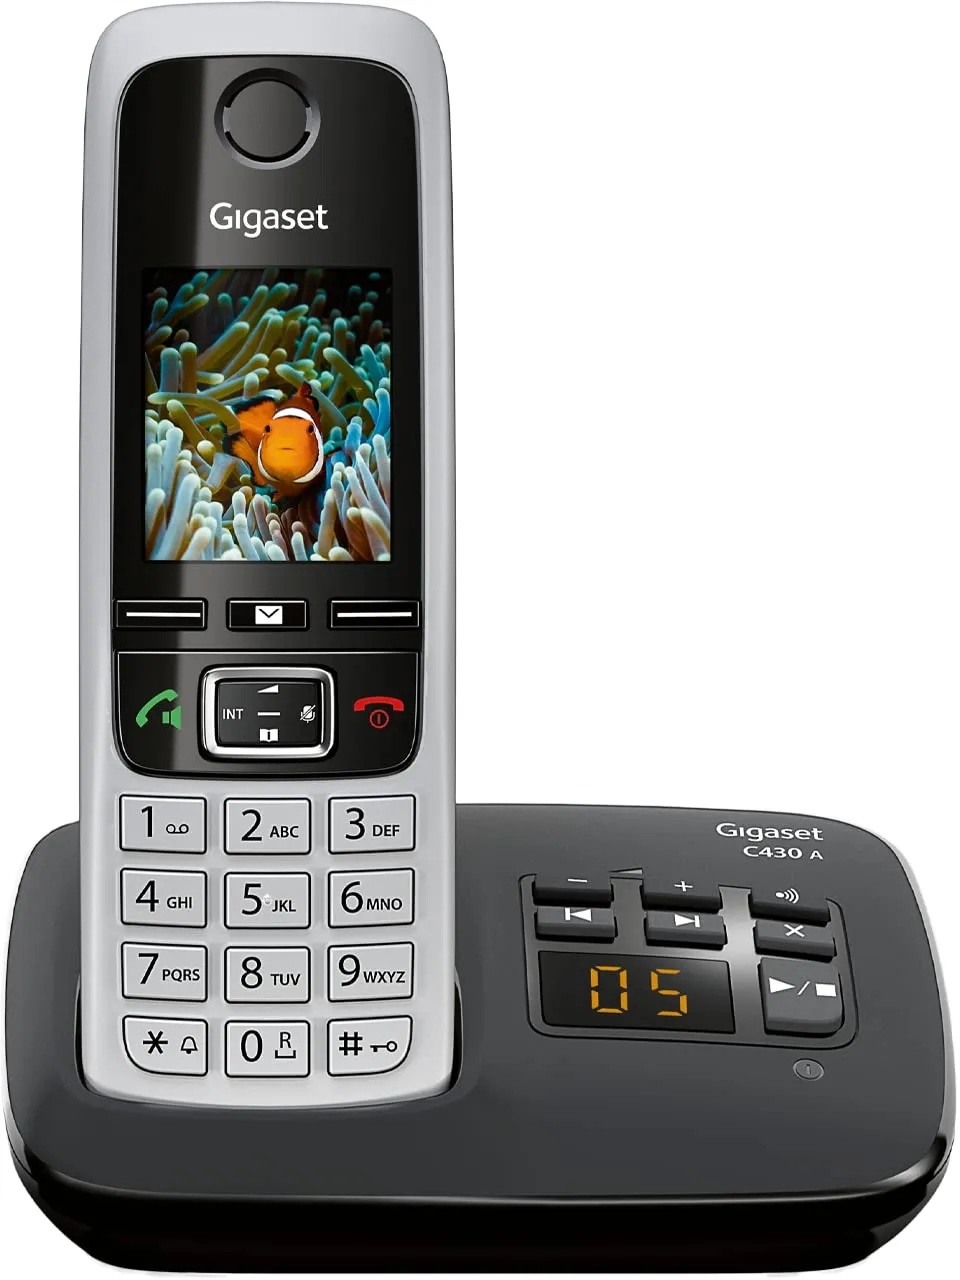 Gigaset C430A - Schnurloses DECT-Telefon mit Anrufbeantworter und Freisprechfunktion, klassisches Mobilteil mit TFT-Farbdisplay, schwarz-silber